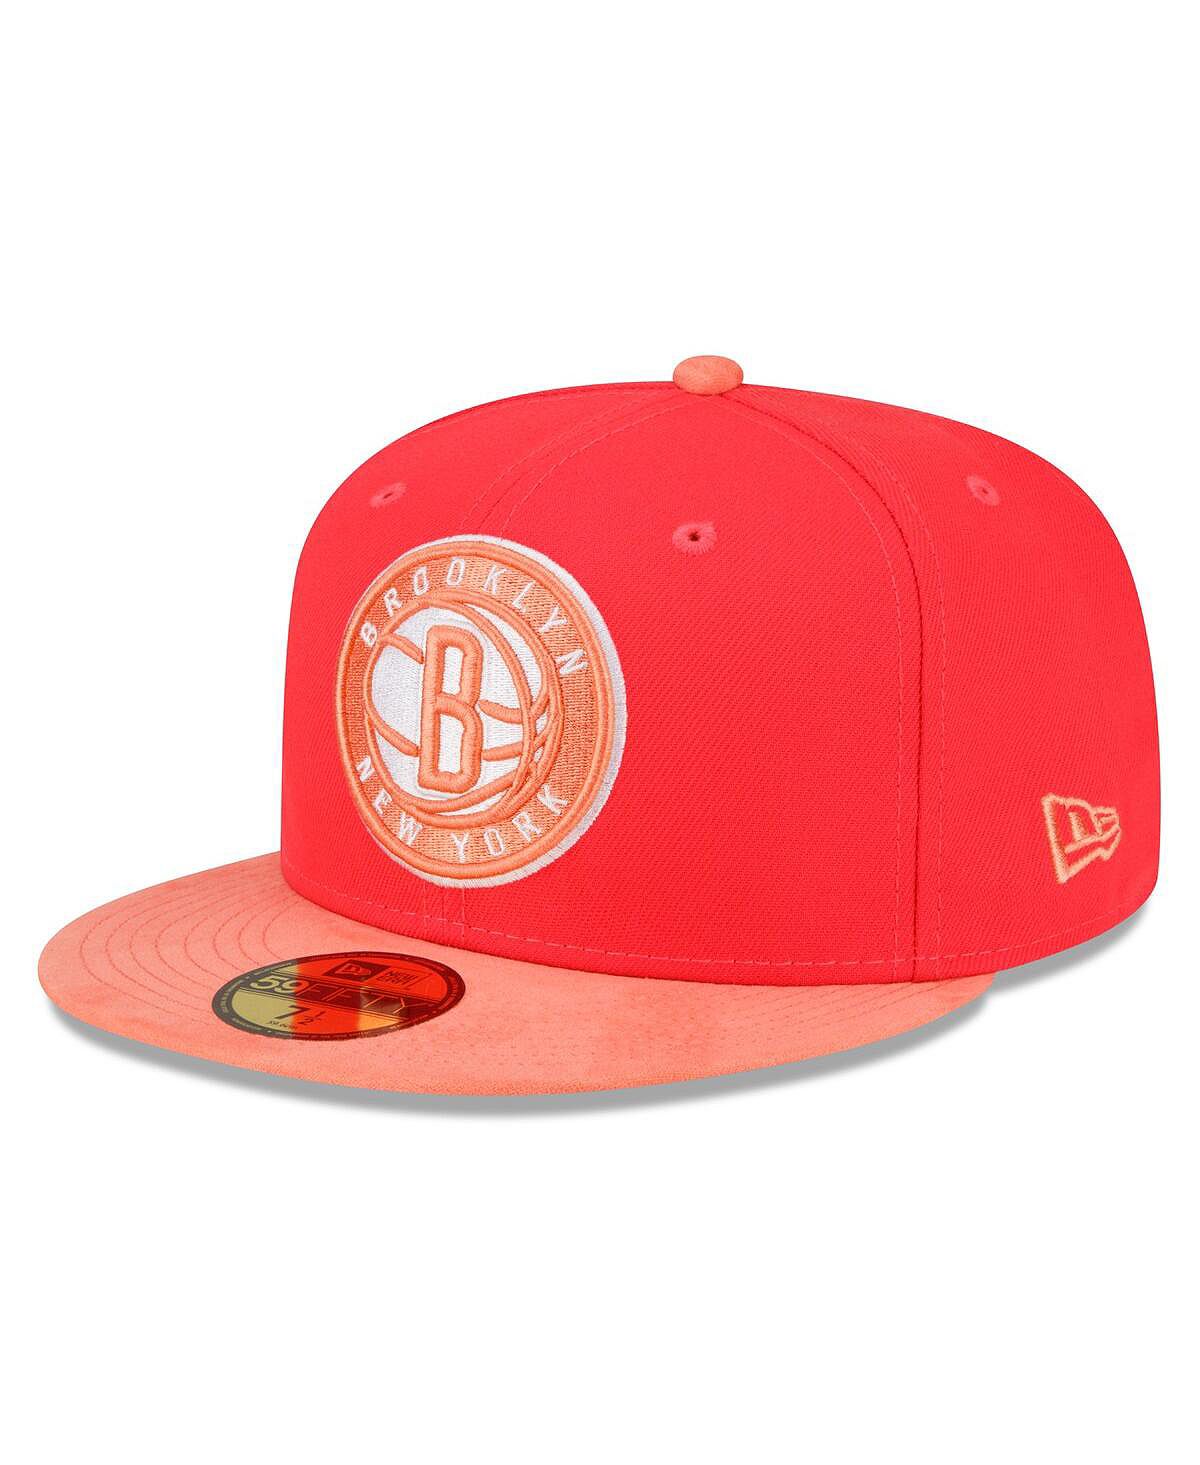 Мужская шляпа в тон 59FIFTY красно-персикового цвета Brooklyn Nets New Era